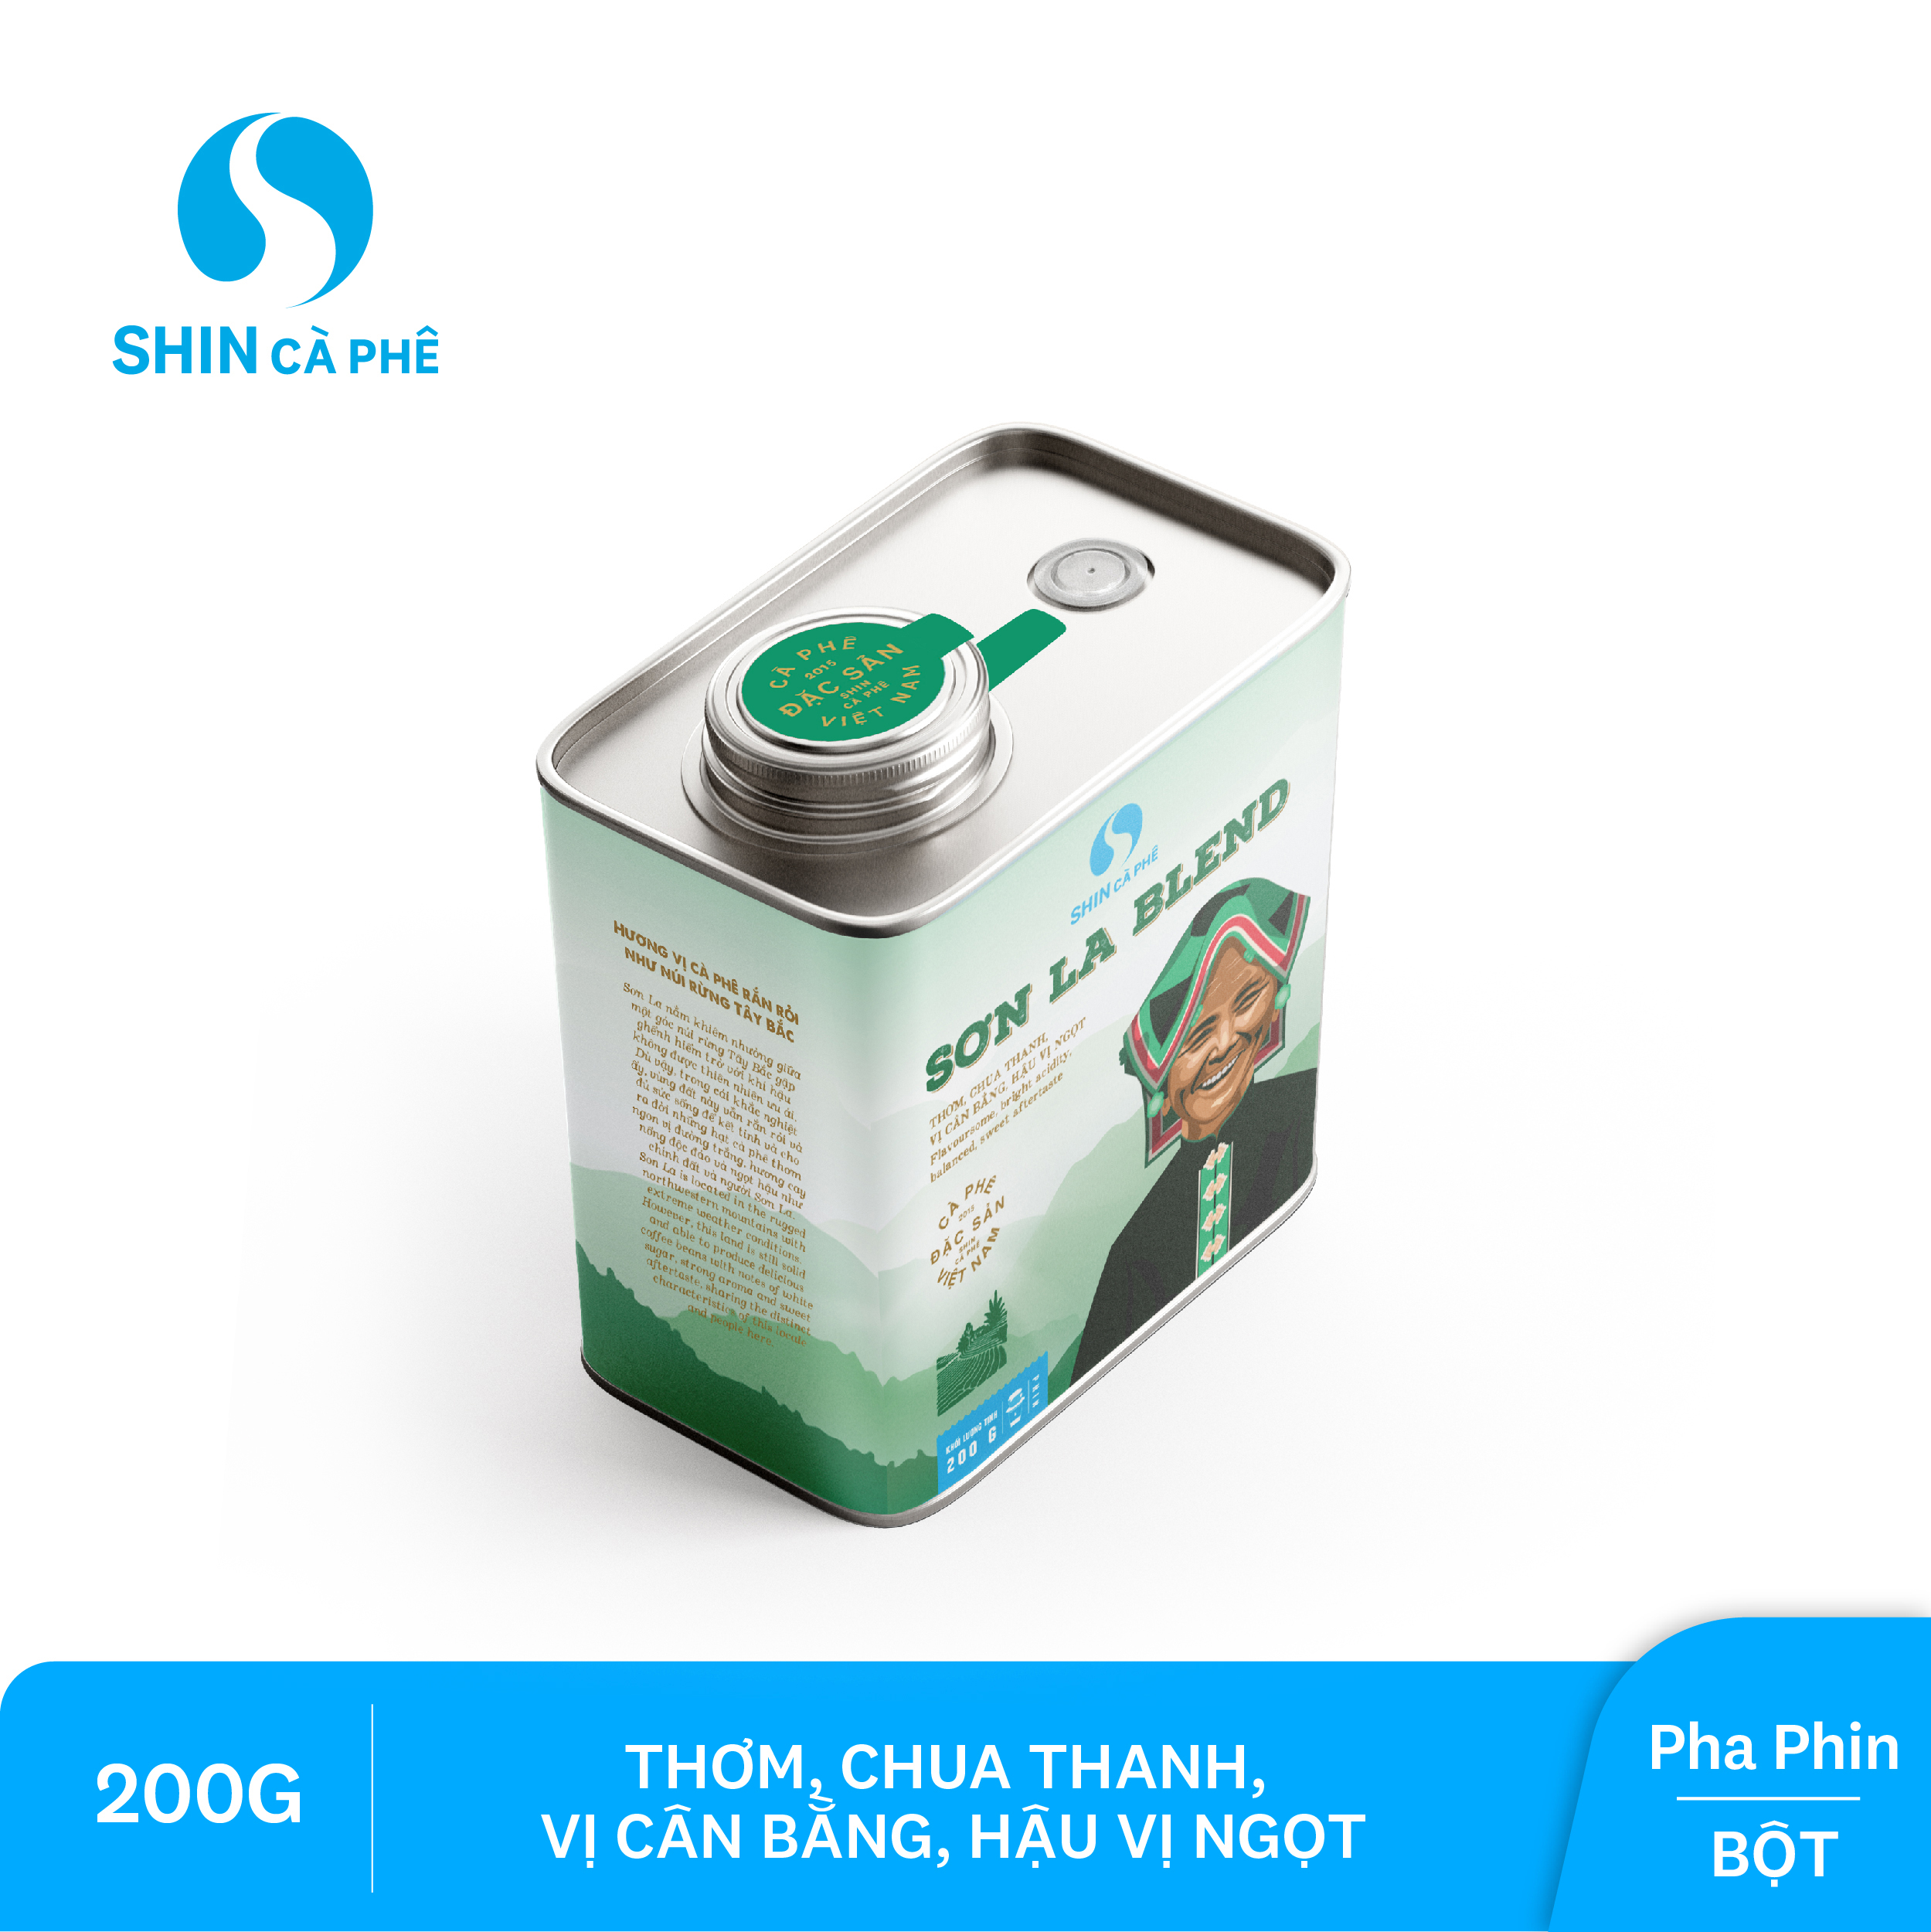 SHIN Cà phê - Cà phê pha phin Sơn La Blend - Hộp thiếc 200 gram (Bột)